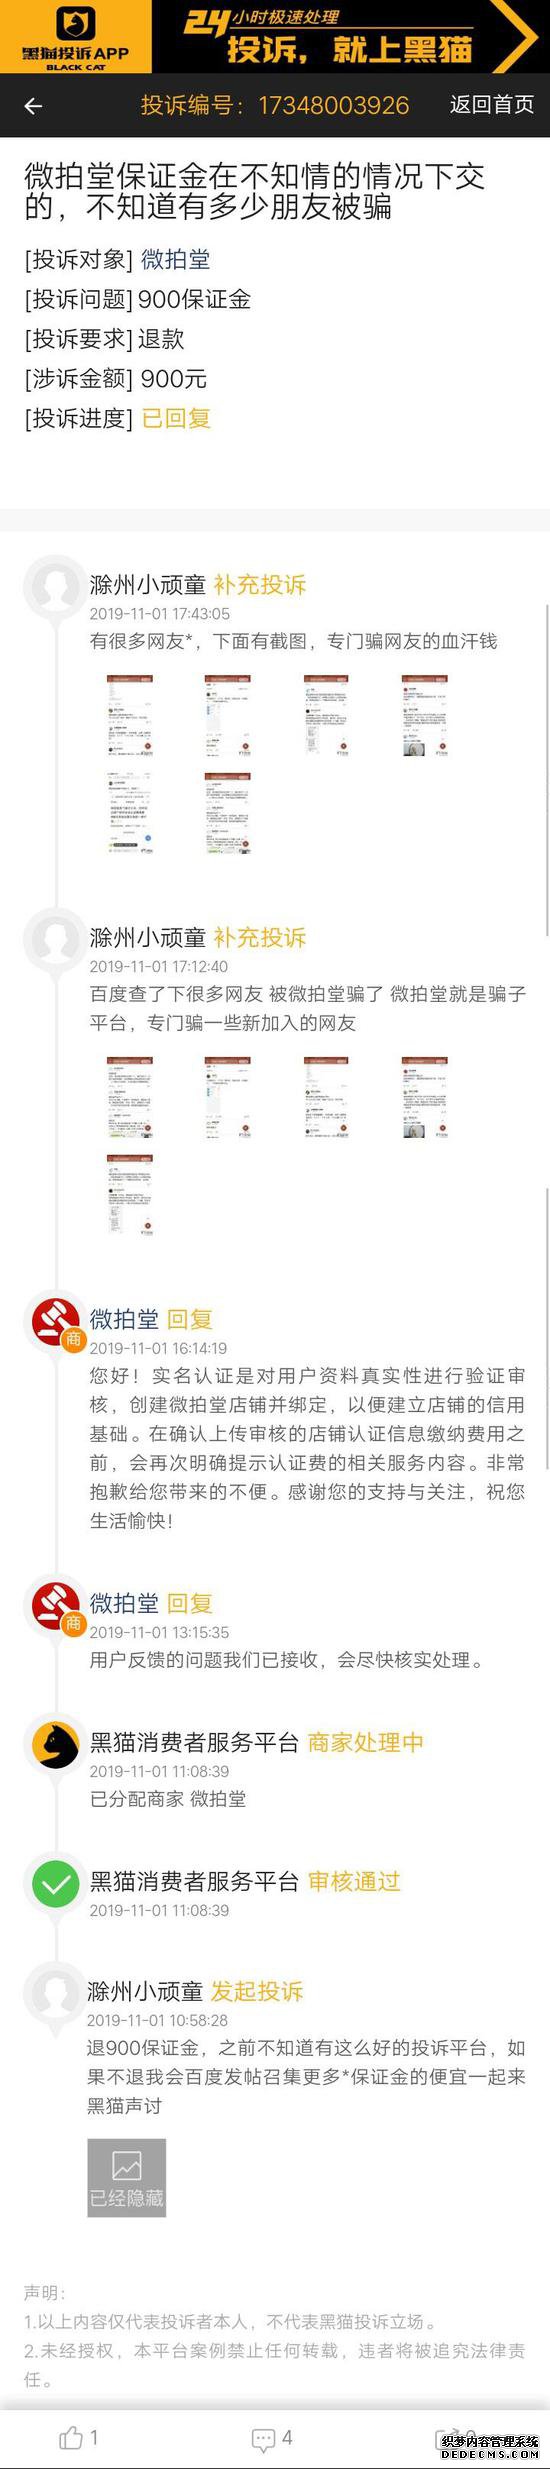 【网快递单号网】网友投诉微拍堂保证金不退 官方客服已回复